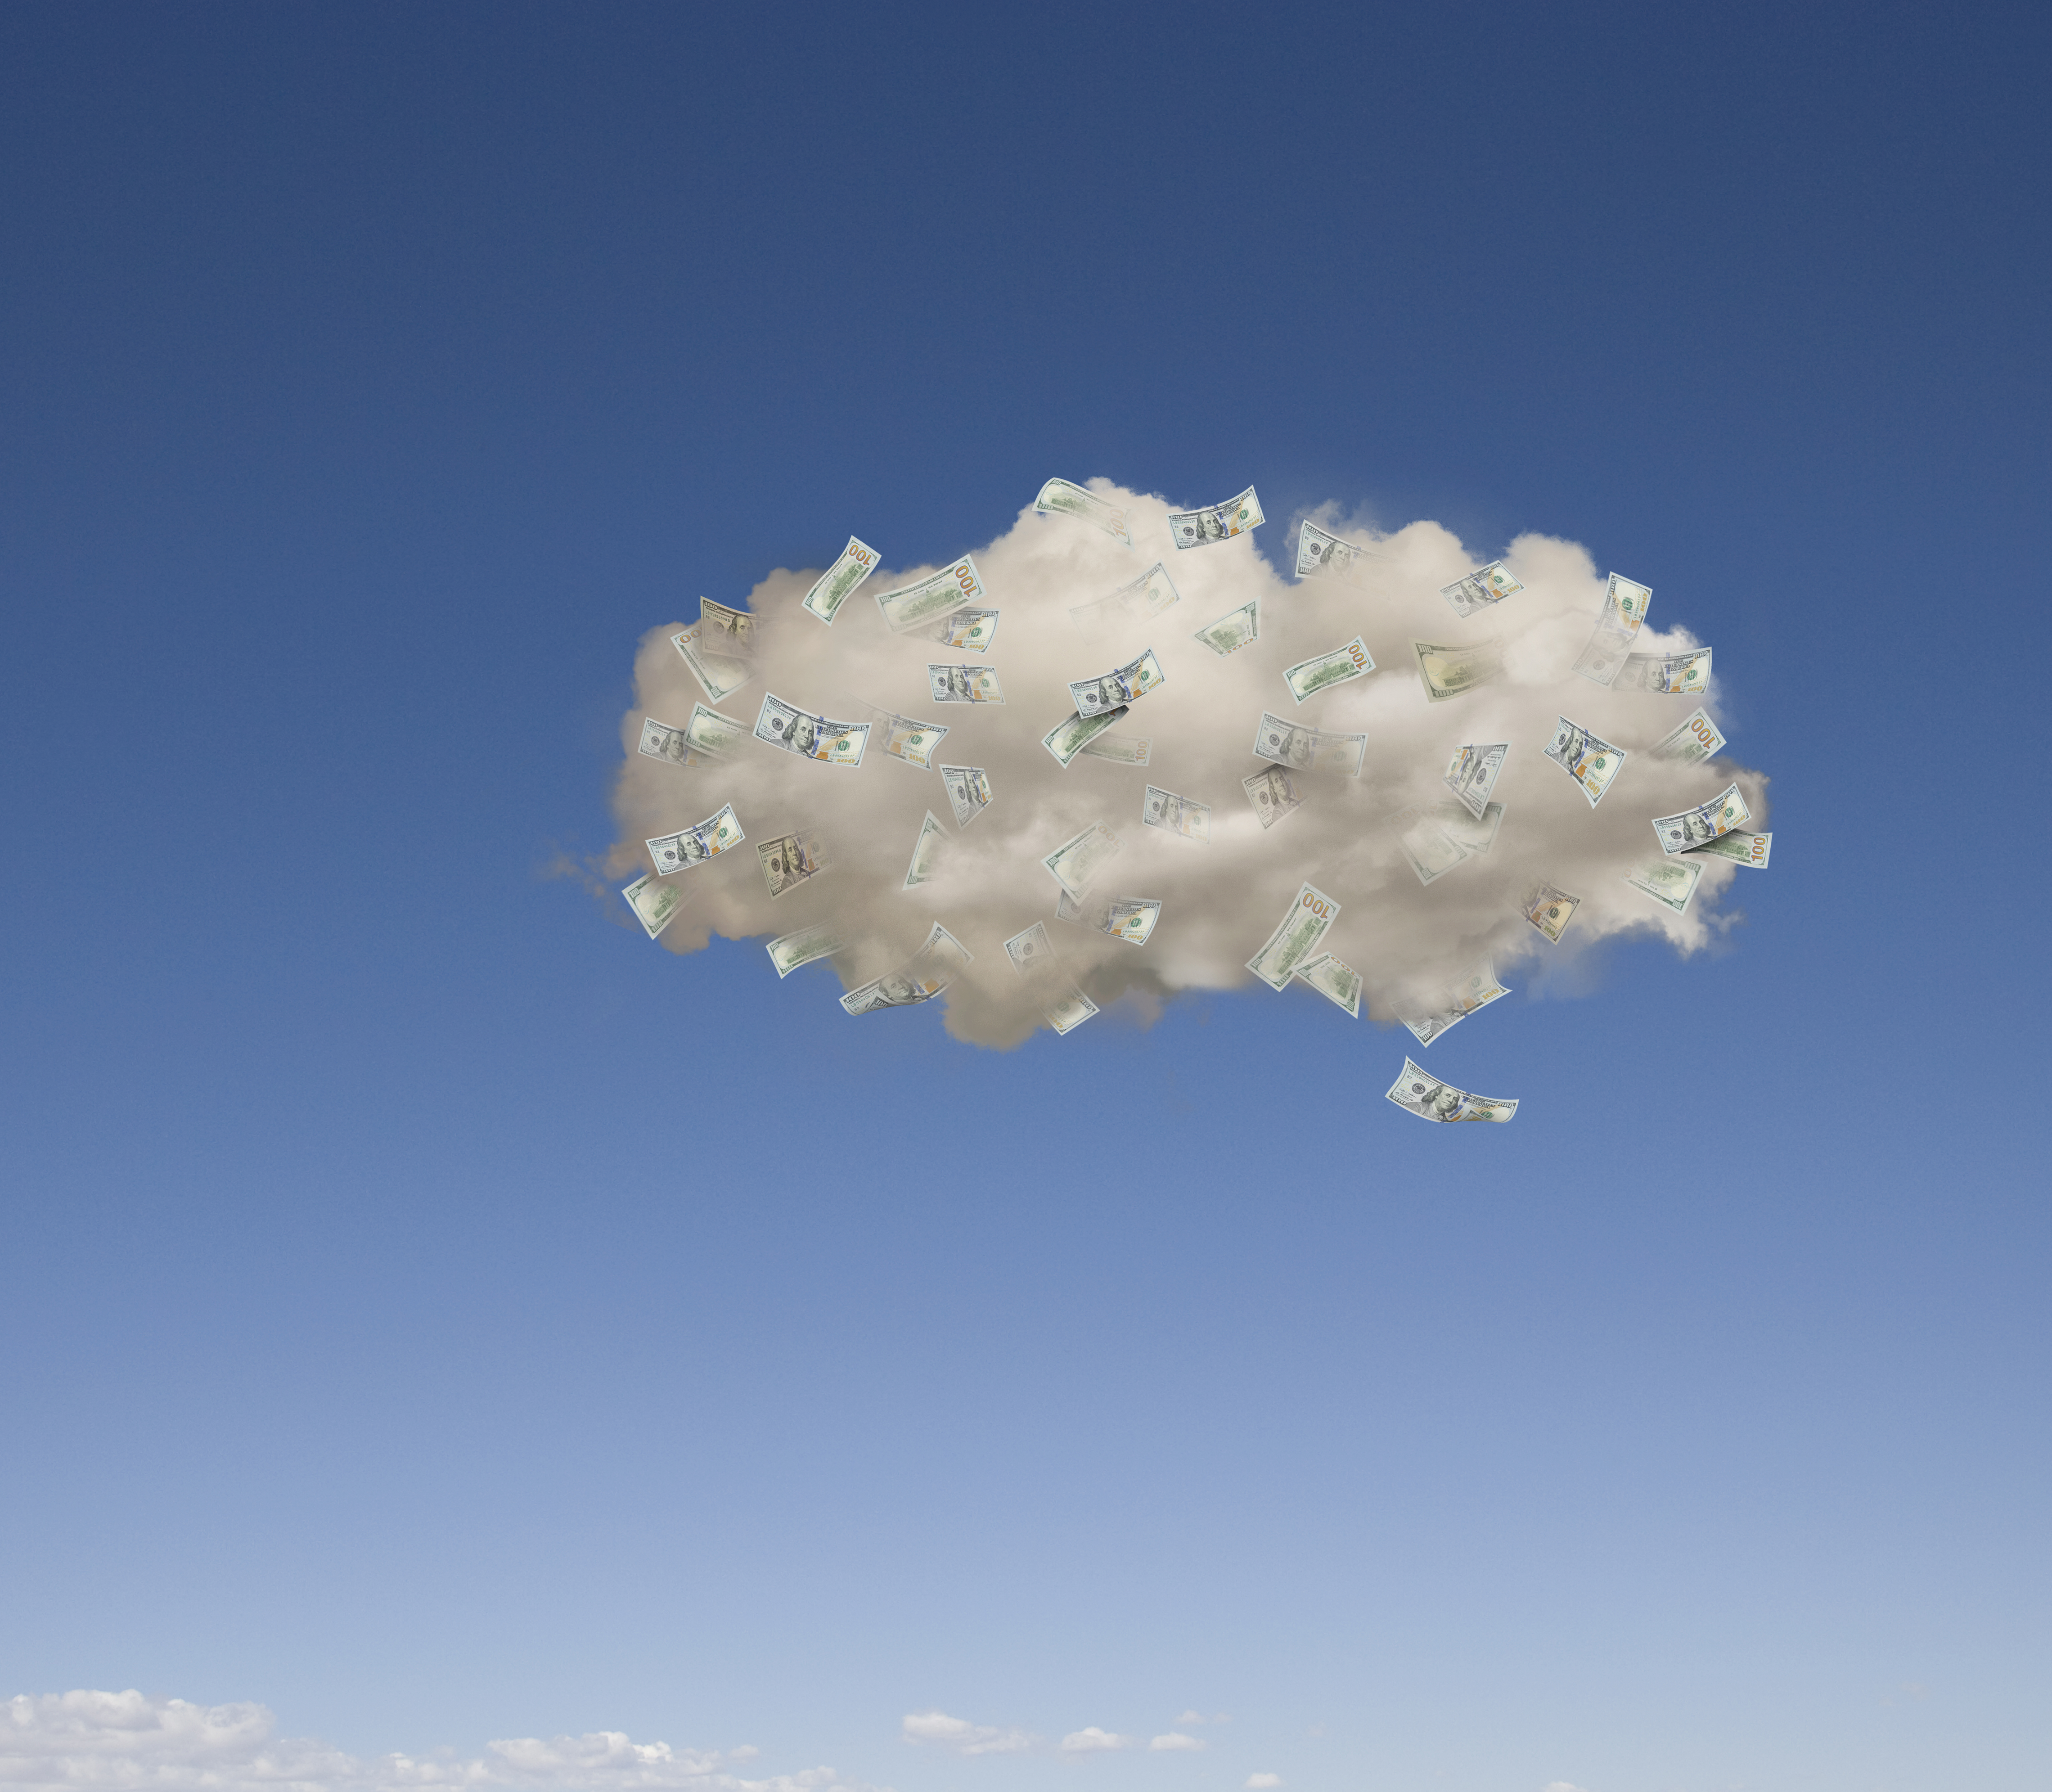 Imagen de dinero flotando en una nube contra un cielo azul.